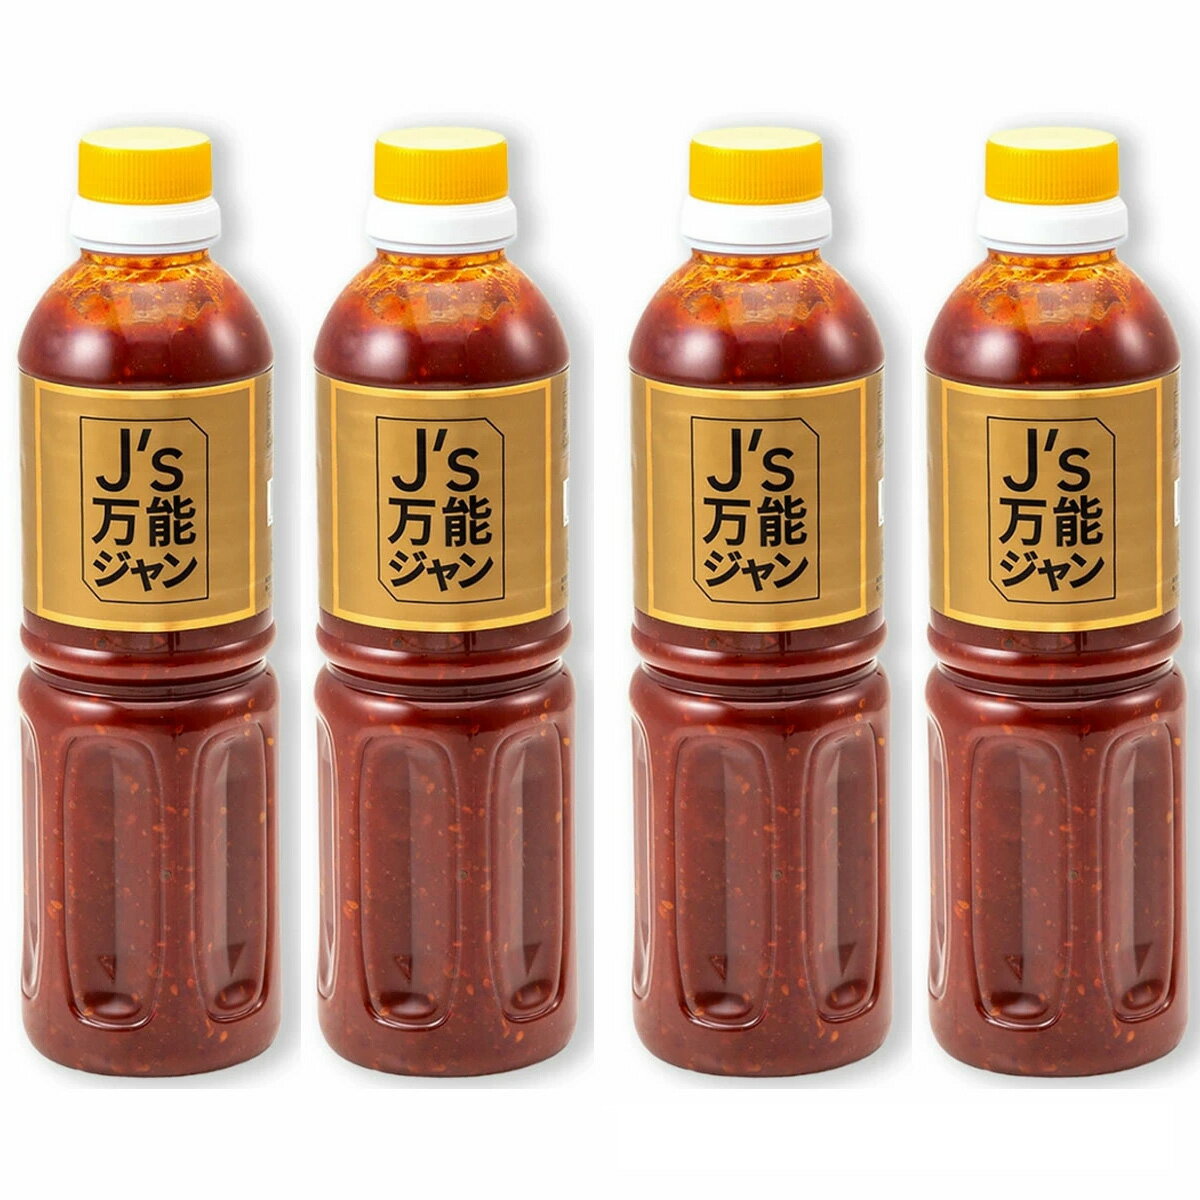 アカバンガ エクストラ ホット チリソース (スパイシー) 100 ml / 3.38 オンスの卸売 - バルク 1 箱あたり 12 個 Wholesale of Akabanga Extra Hot Chilli Sauce (spicy) 100 ml / 3.38 oz- Bulk 12 units per box